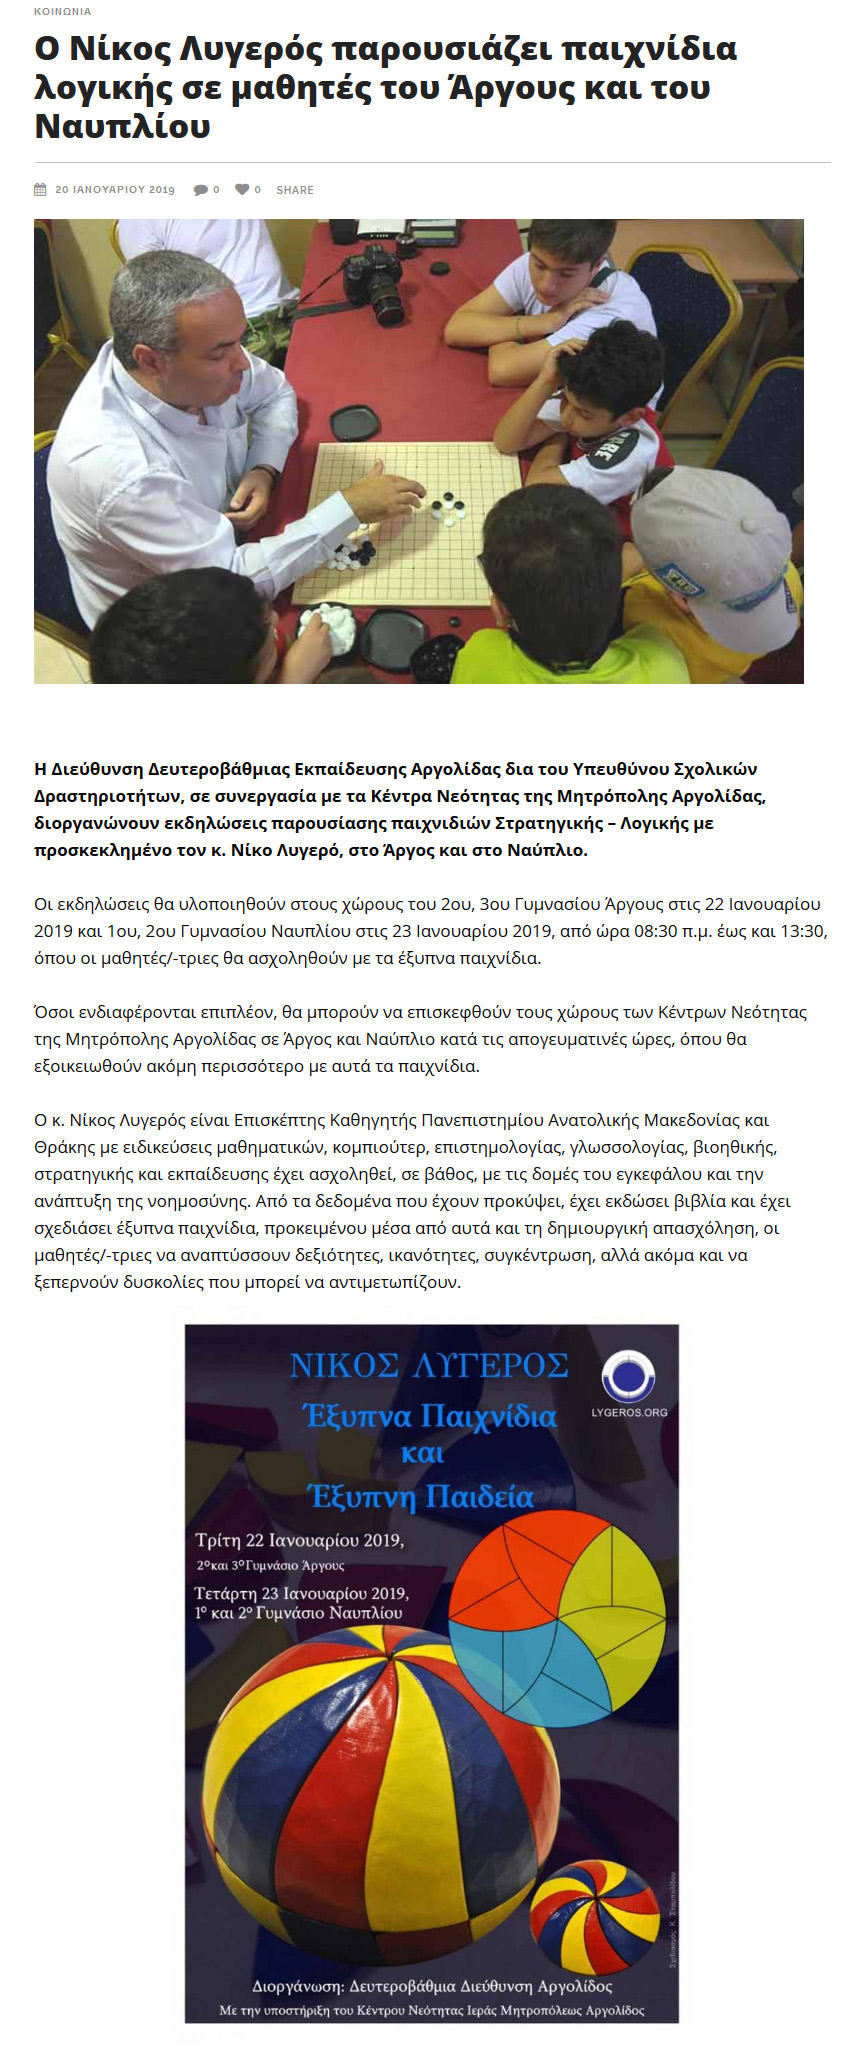 Ο Νίκος Λυγερός παρουσιάζει παιχνίδια λογικής σε μαθητές του Άργους και του Ναυπλίου, argolika, 20/01/2019 - Publication